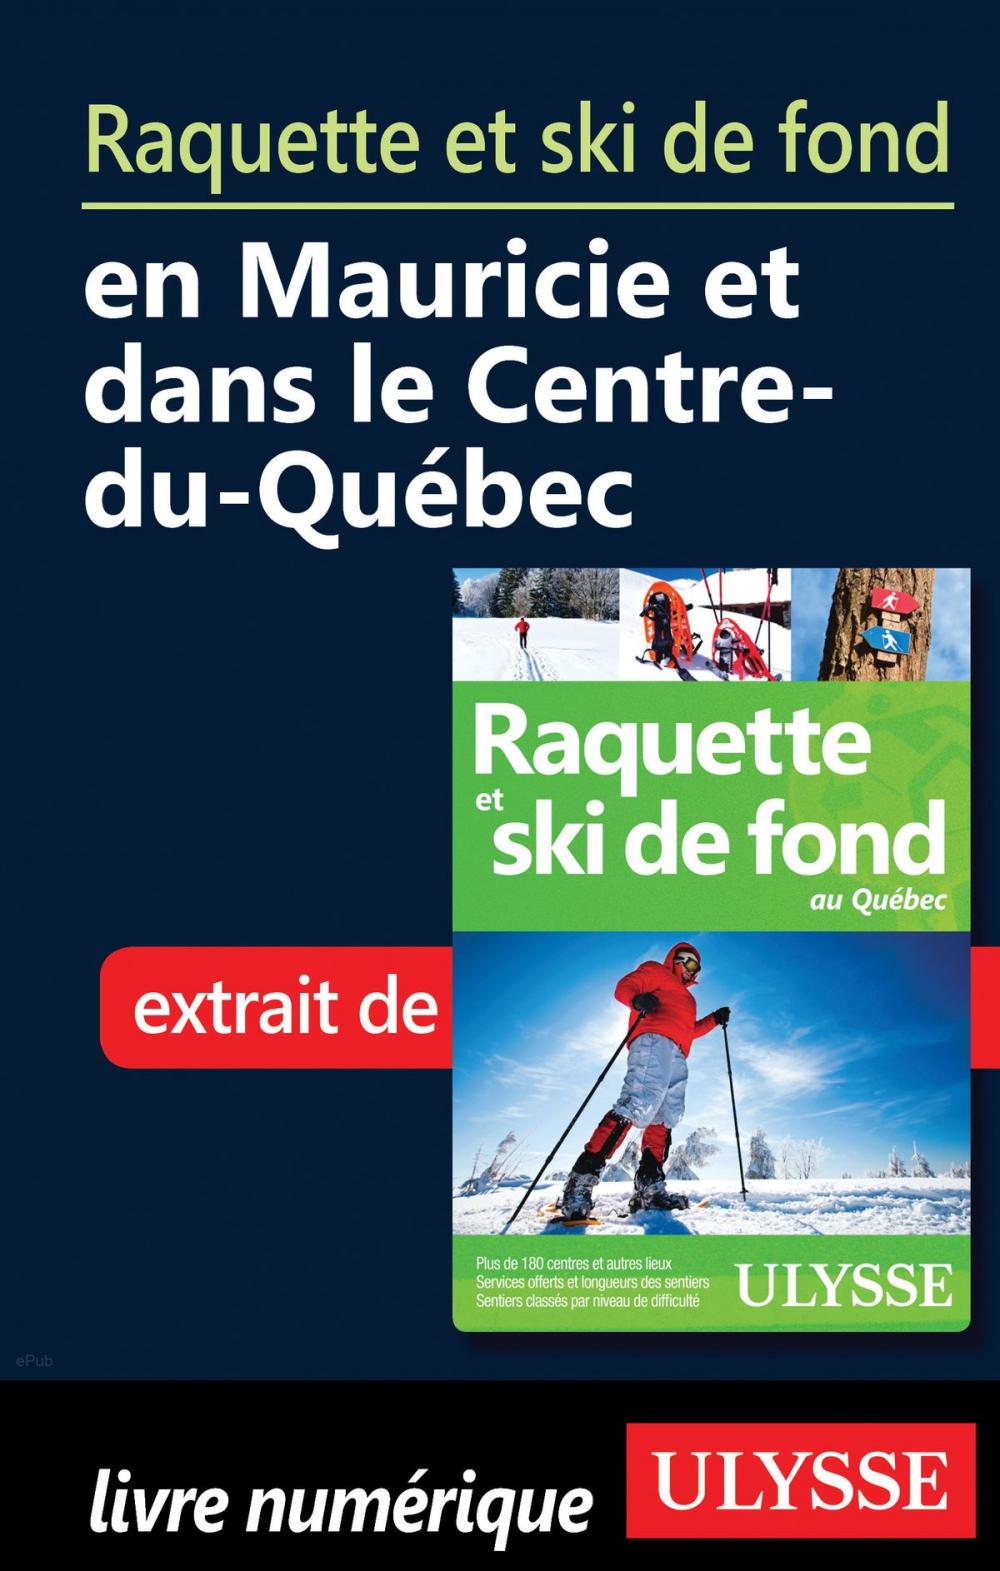 Big bigCover of Raquette et ski de fond en Mauricie et Centre-du-Québec